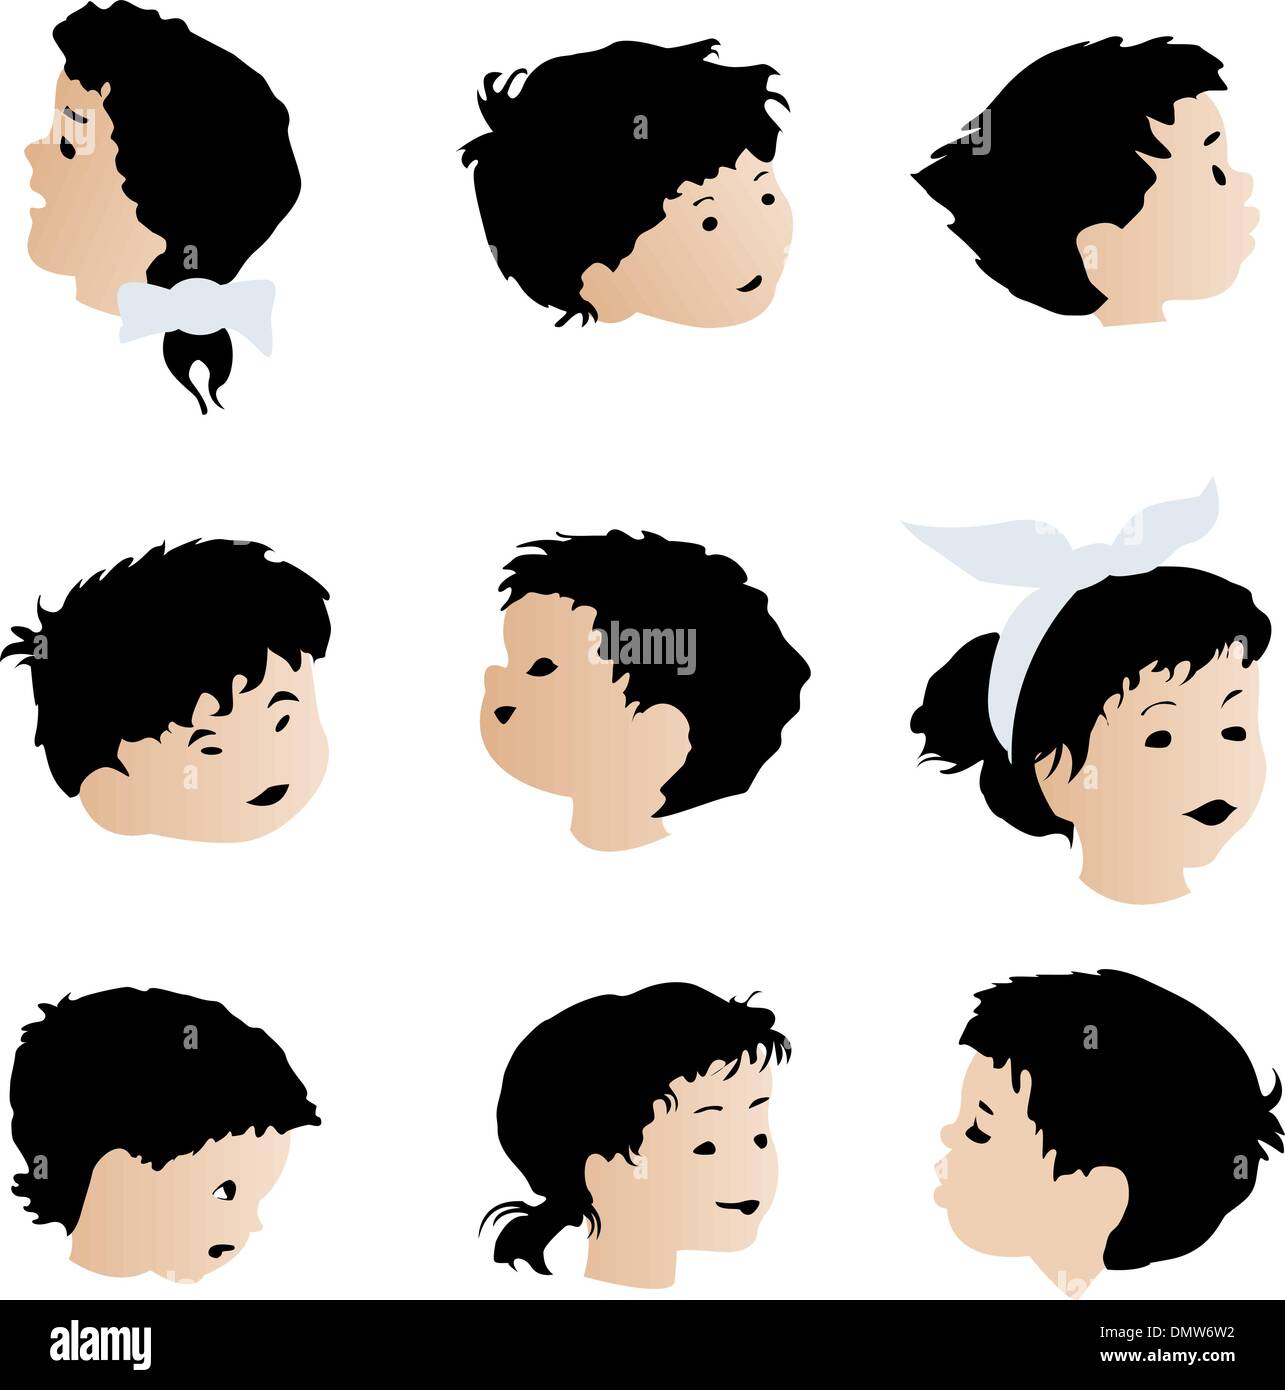 Les expressions des visages, les enfants Illustration de Vecteur